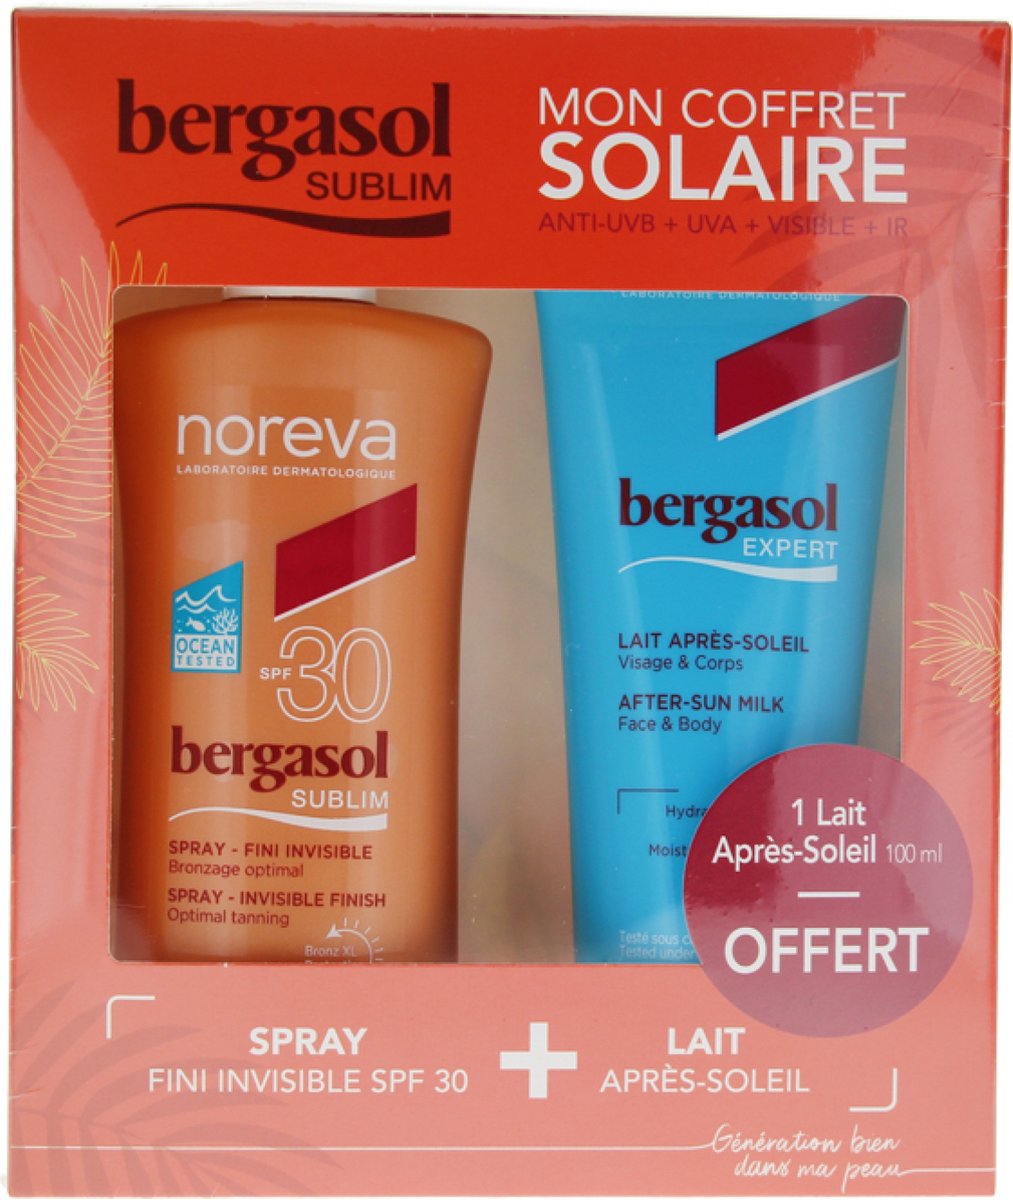 Noreva Bergasol Sublim Spray Invisible Finish SPF30 125 ml + Expert After-Sun Milk 100 ml Gratis